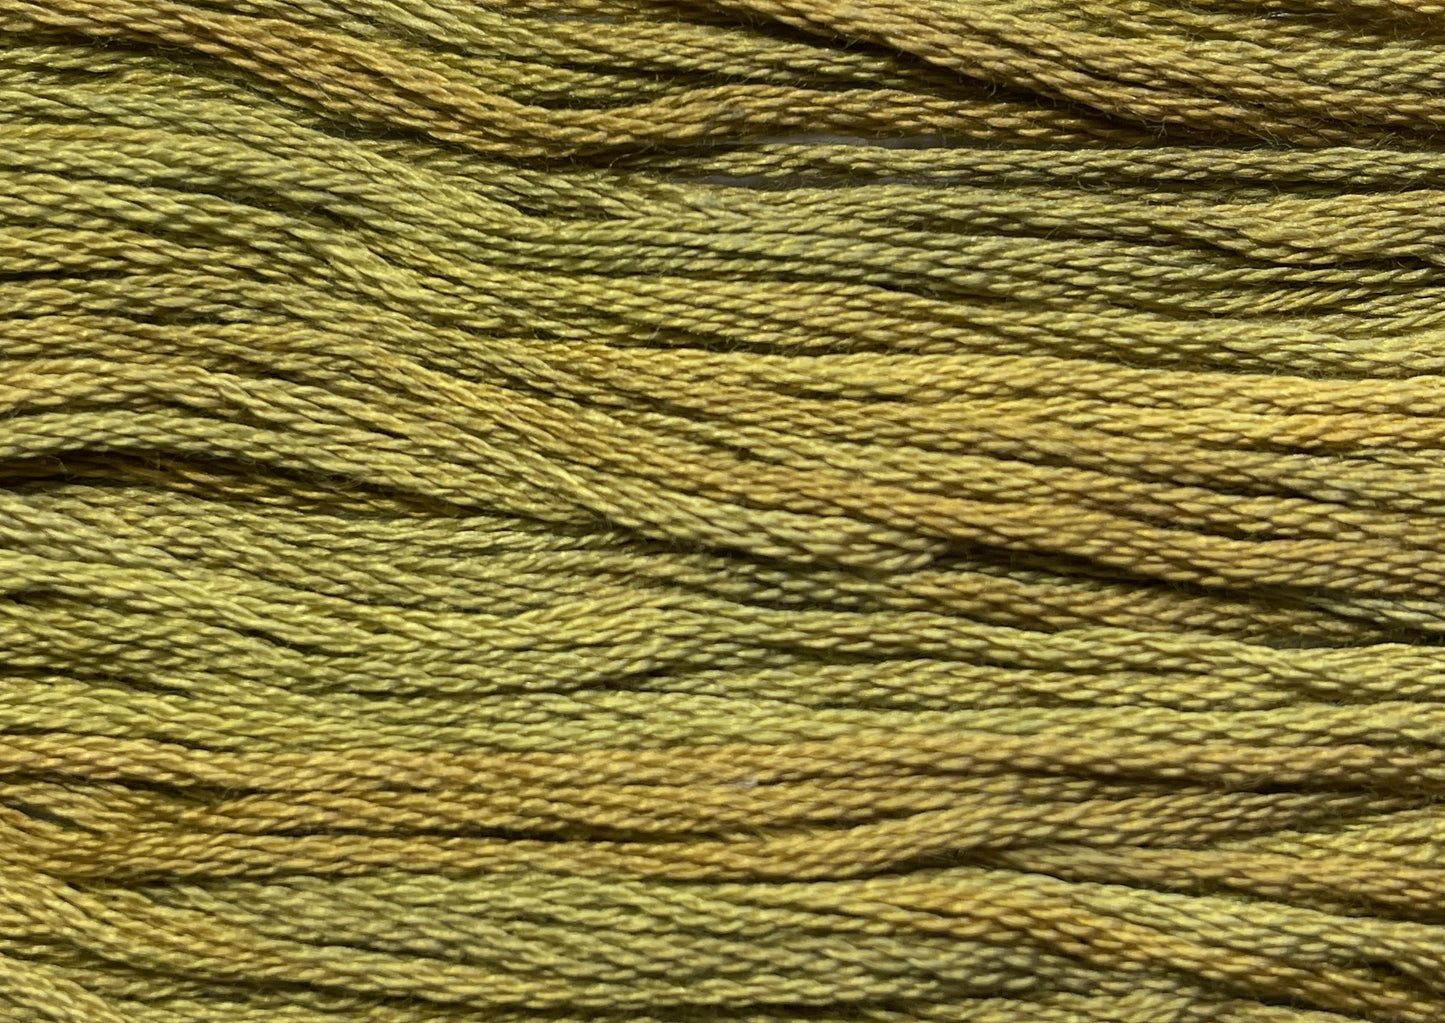 Chamomile - Gentle Arts Cotton Thread - 5 yard Skein - Cross Stitch Floss, Thread & Floss, Thread & Floss, The Crafty Grimalkin - A Cross Stitch Store